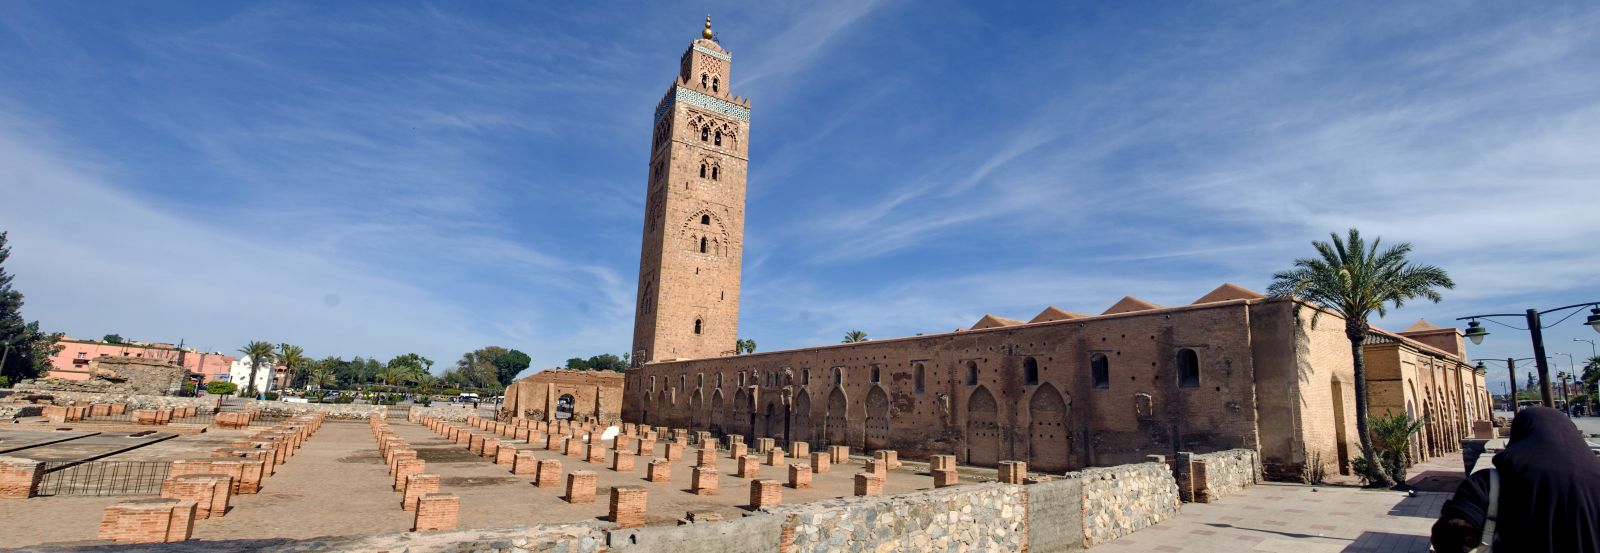 Enduro tour in Morocco